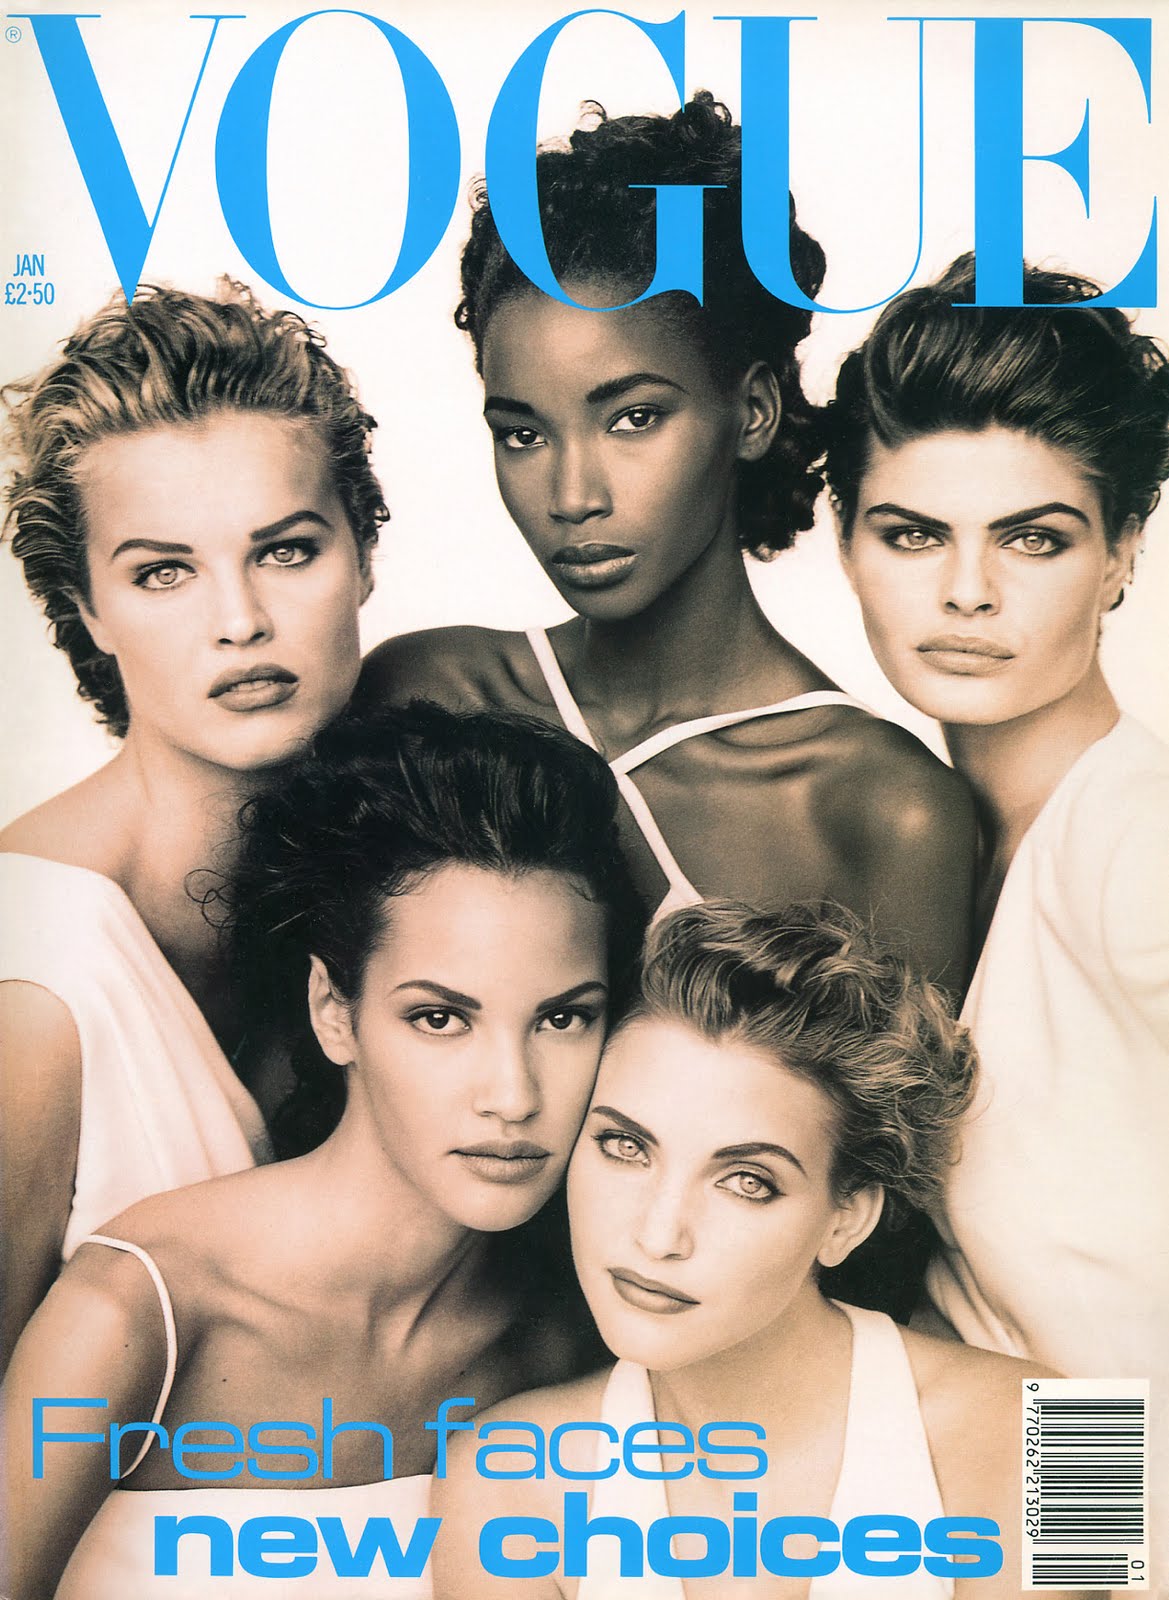 http://2.bp.blogspot.com/-HU8tyOtnRYI/TjTncriwFMI/AAAAAAAACVU/Ay0tzcN9k6k/s1600/Beverly+UK+Vogue+Jan+1992.jpg